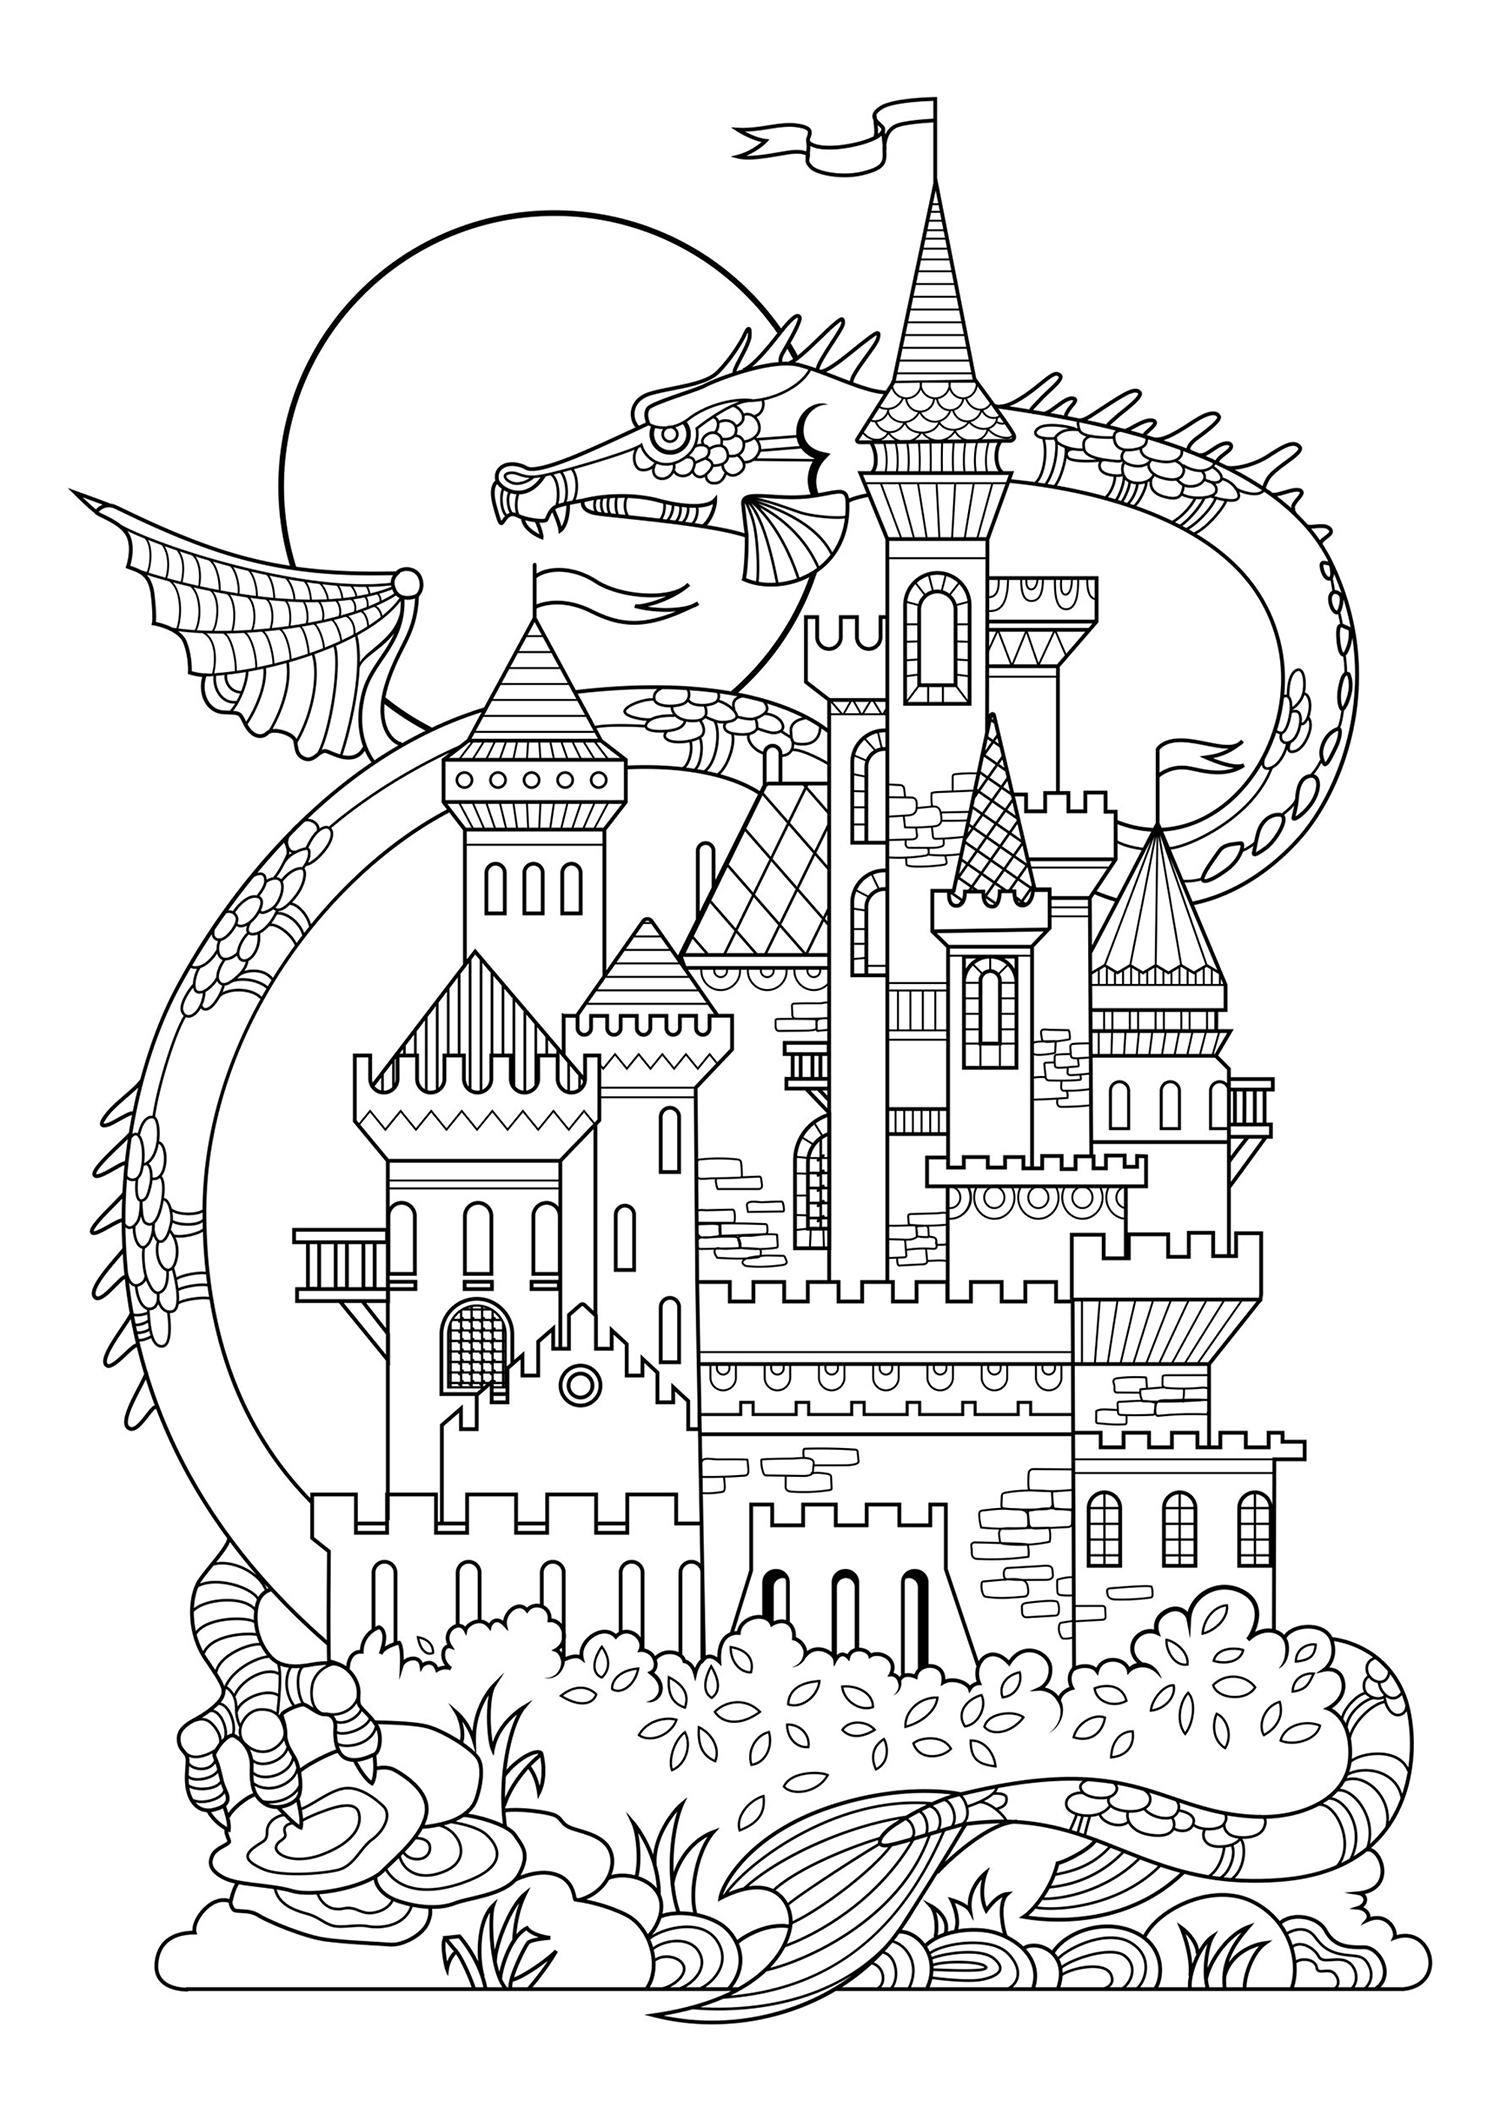 Joli château de conte de fées, avec en arrière plan un dragon géant !, Source : 123rf   Artiste : Alexpokusay